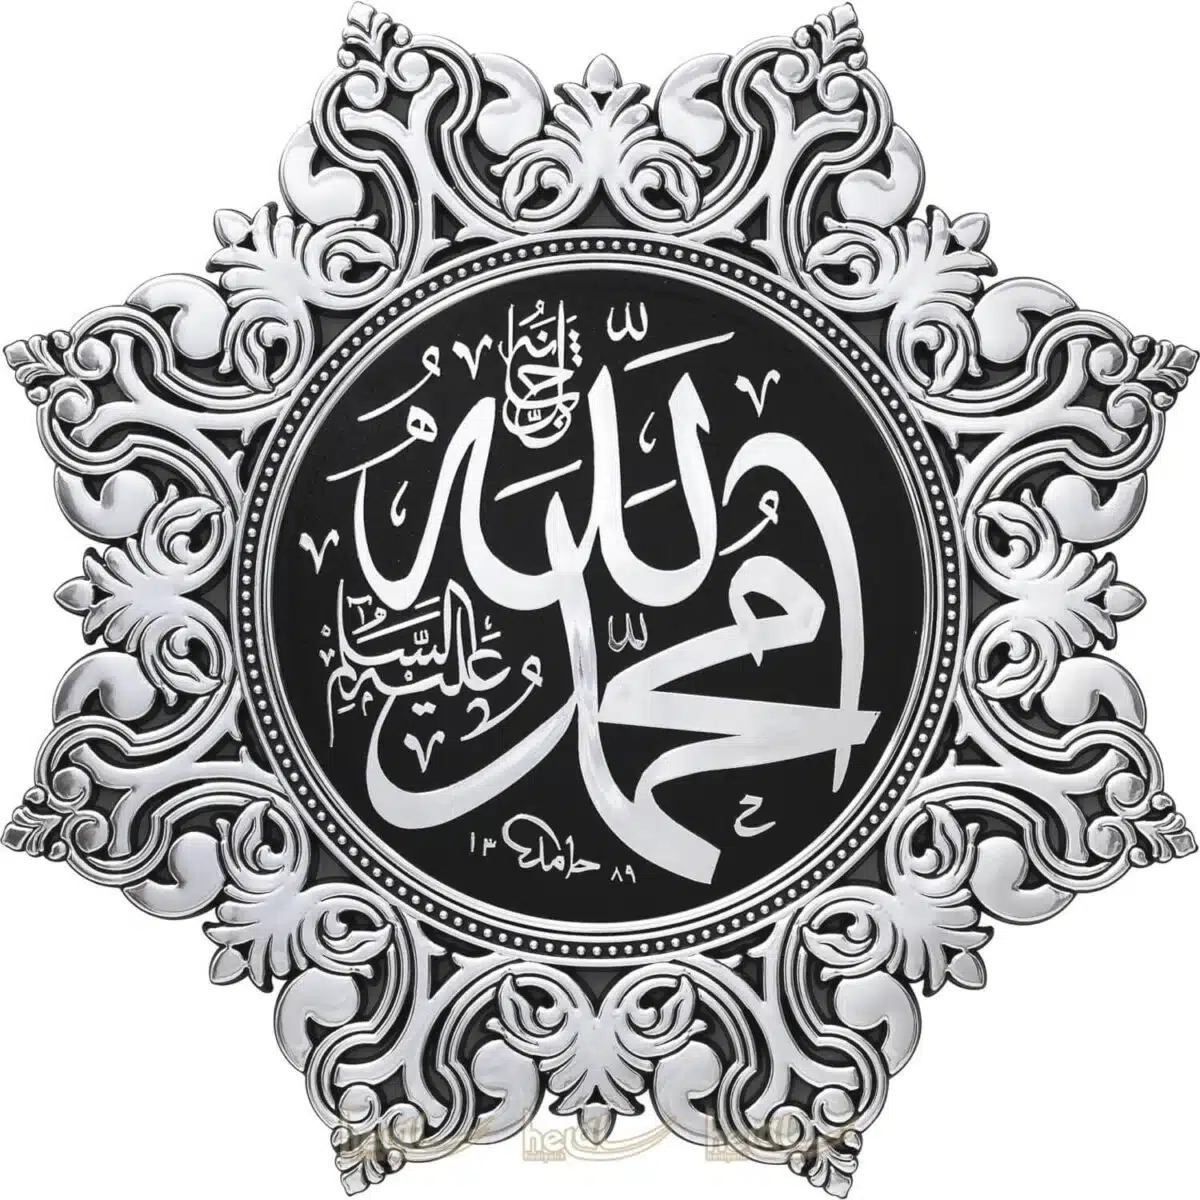 38cm 8 Köşeli Yıldız Modern Osmanlı Tasarımı Allah cc.- Muhammed sav.Lafzı Duvar Panosu Ayetli Ürünler